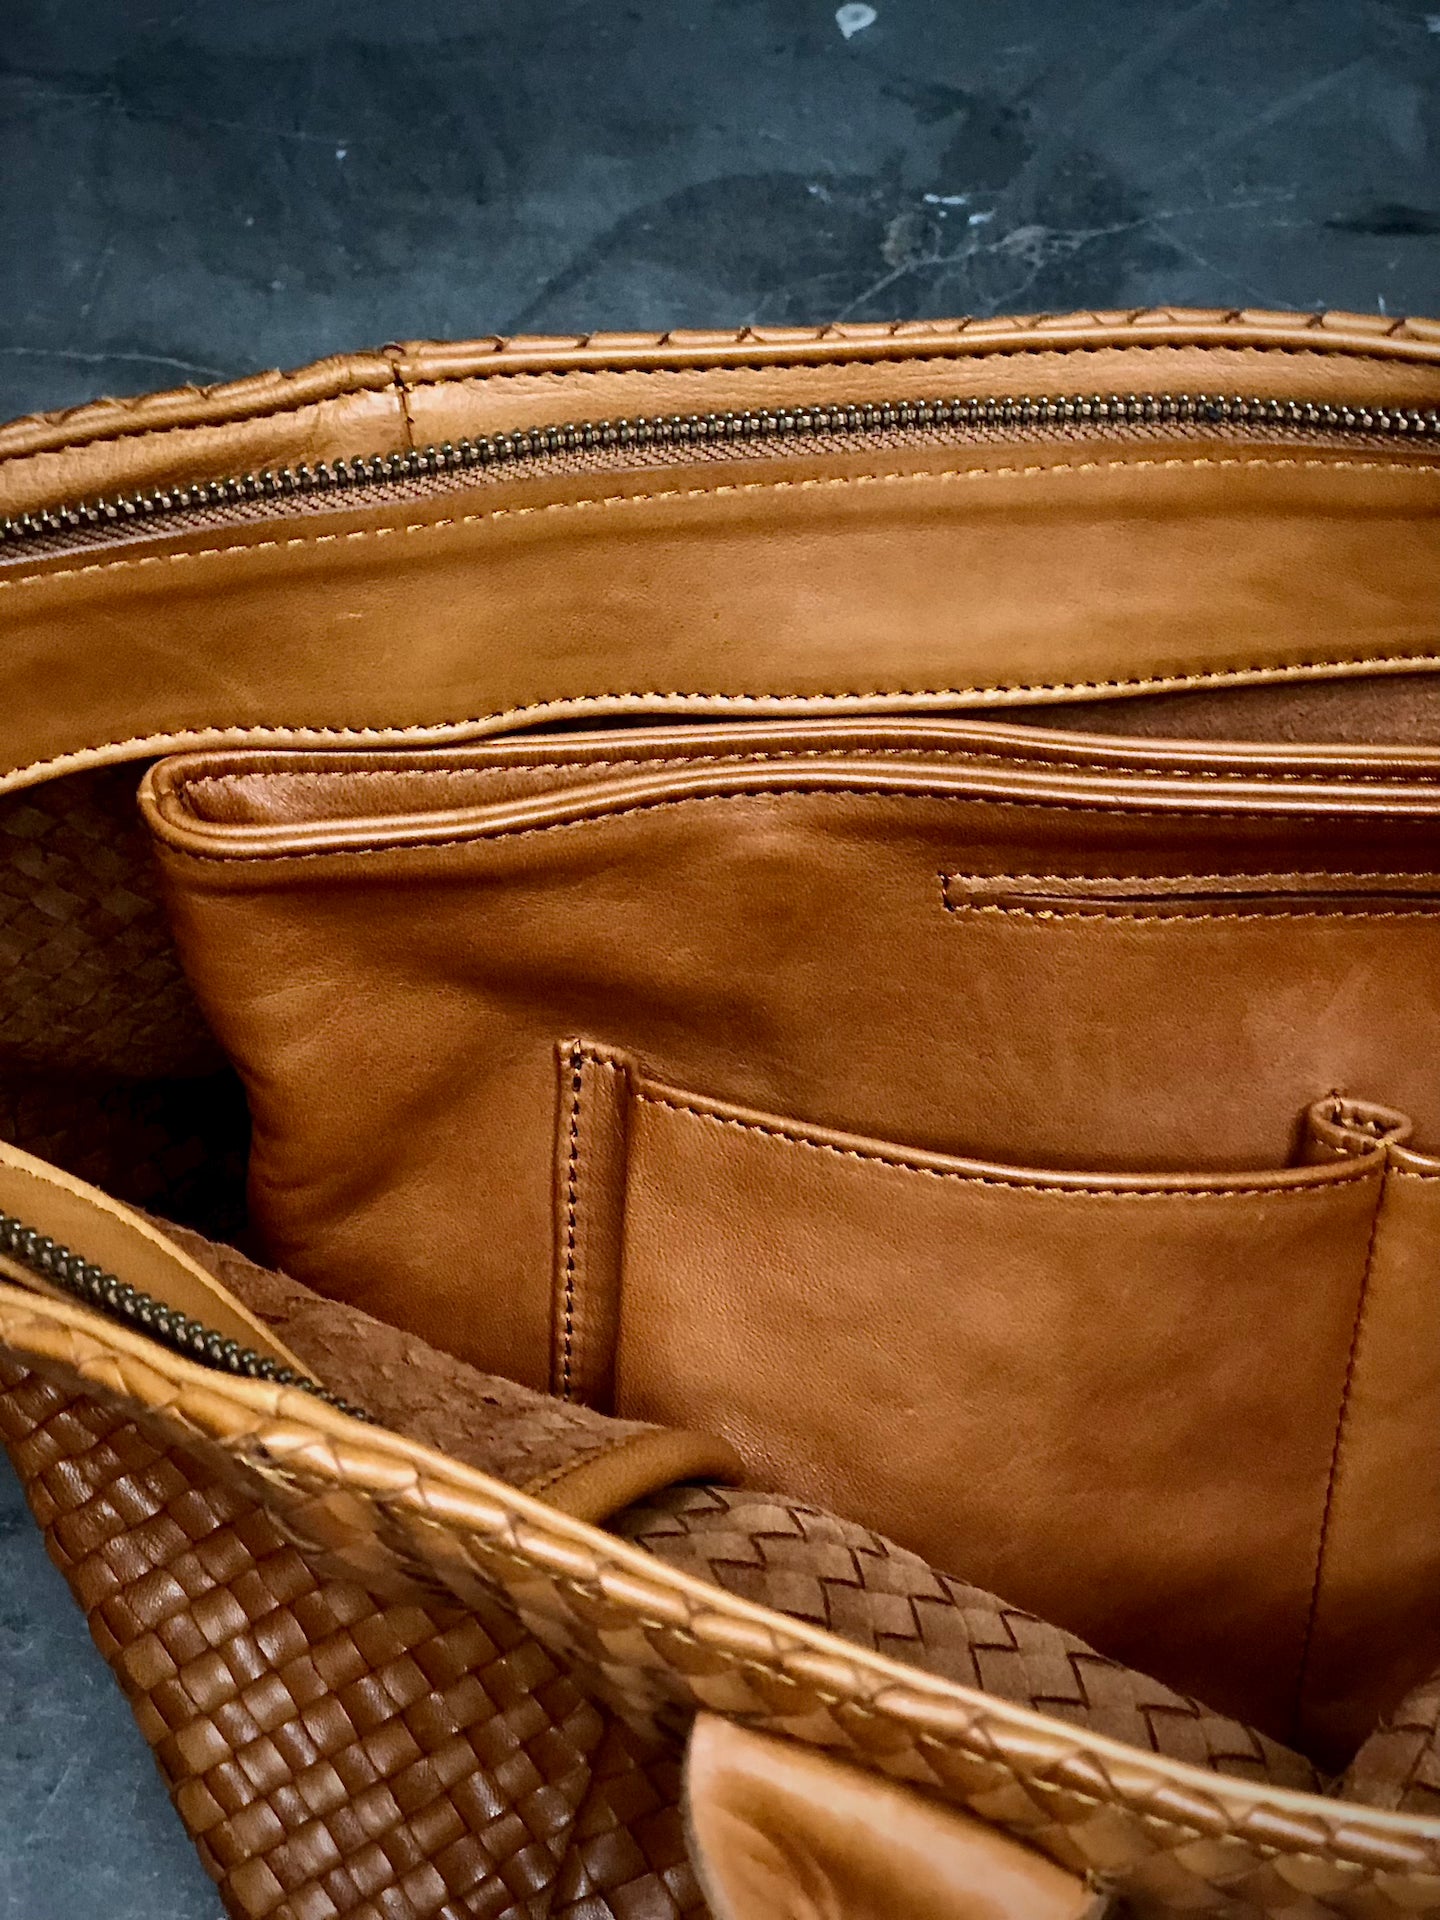 Der Bag Organizer von LABEL17 ist aus geschmeidigem Nappaleder gefertigt und sorgt auf leichte und stilvolle Art für Ordnung und Übersicht in grossen Taschen. Mit Integrierten Aussen- und Innenfächern und magnetischem Verschluss passt Sie perfekt in die Shoulder Bag Original.